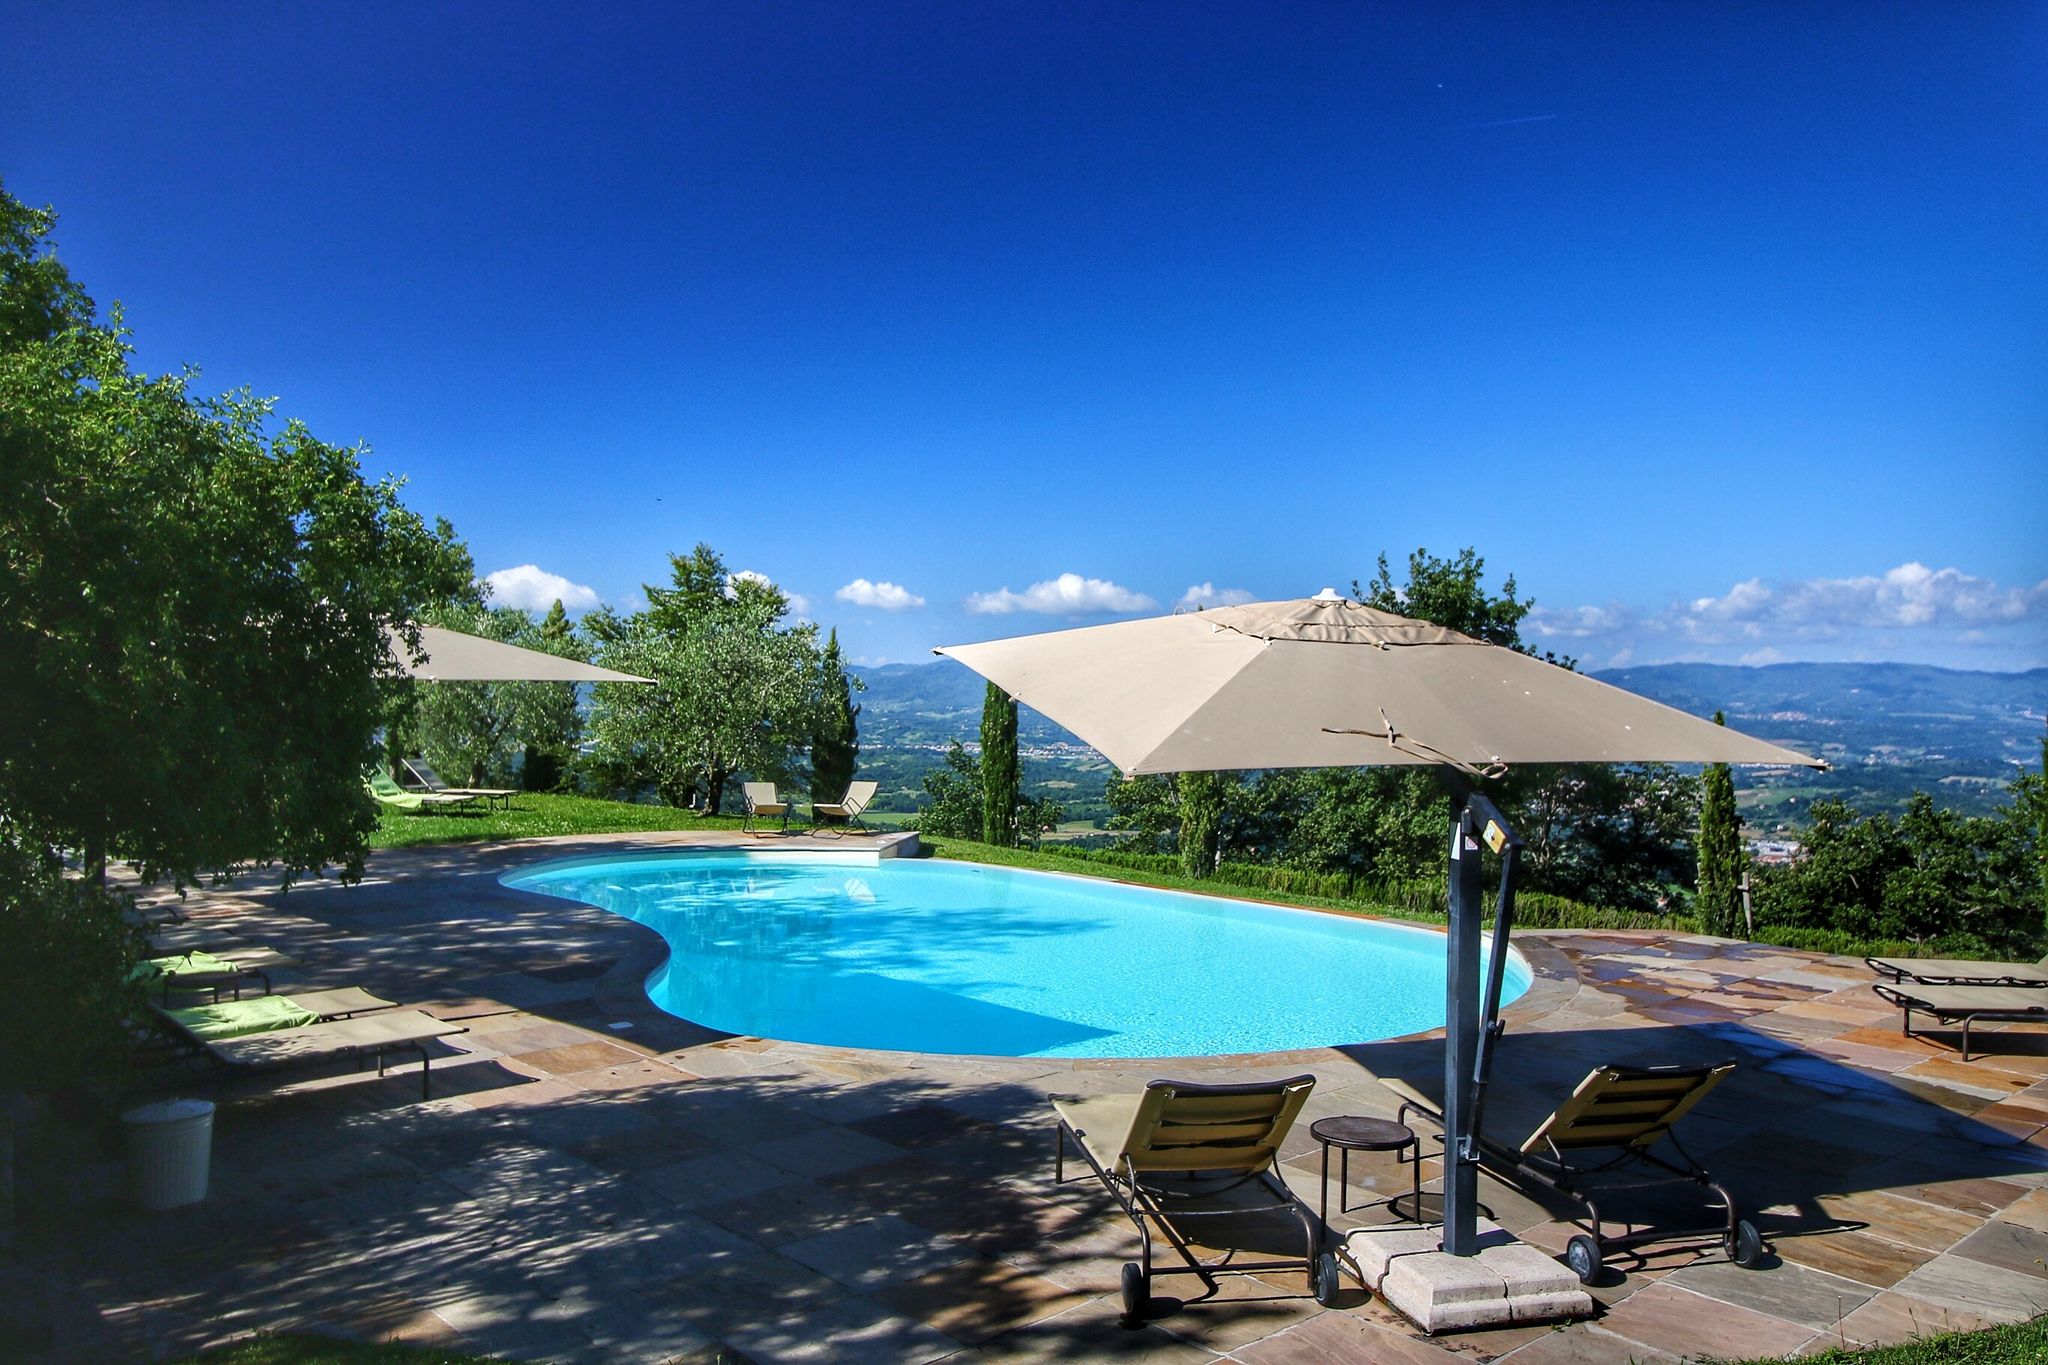 Vakantiewoning met heerlijk zwembad in de heuvels van het Valdarno Arentino